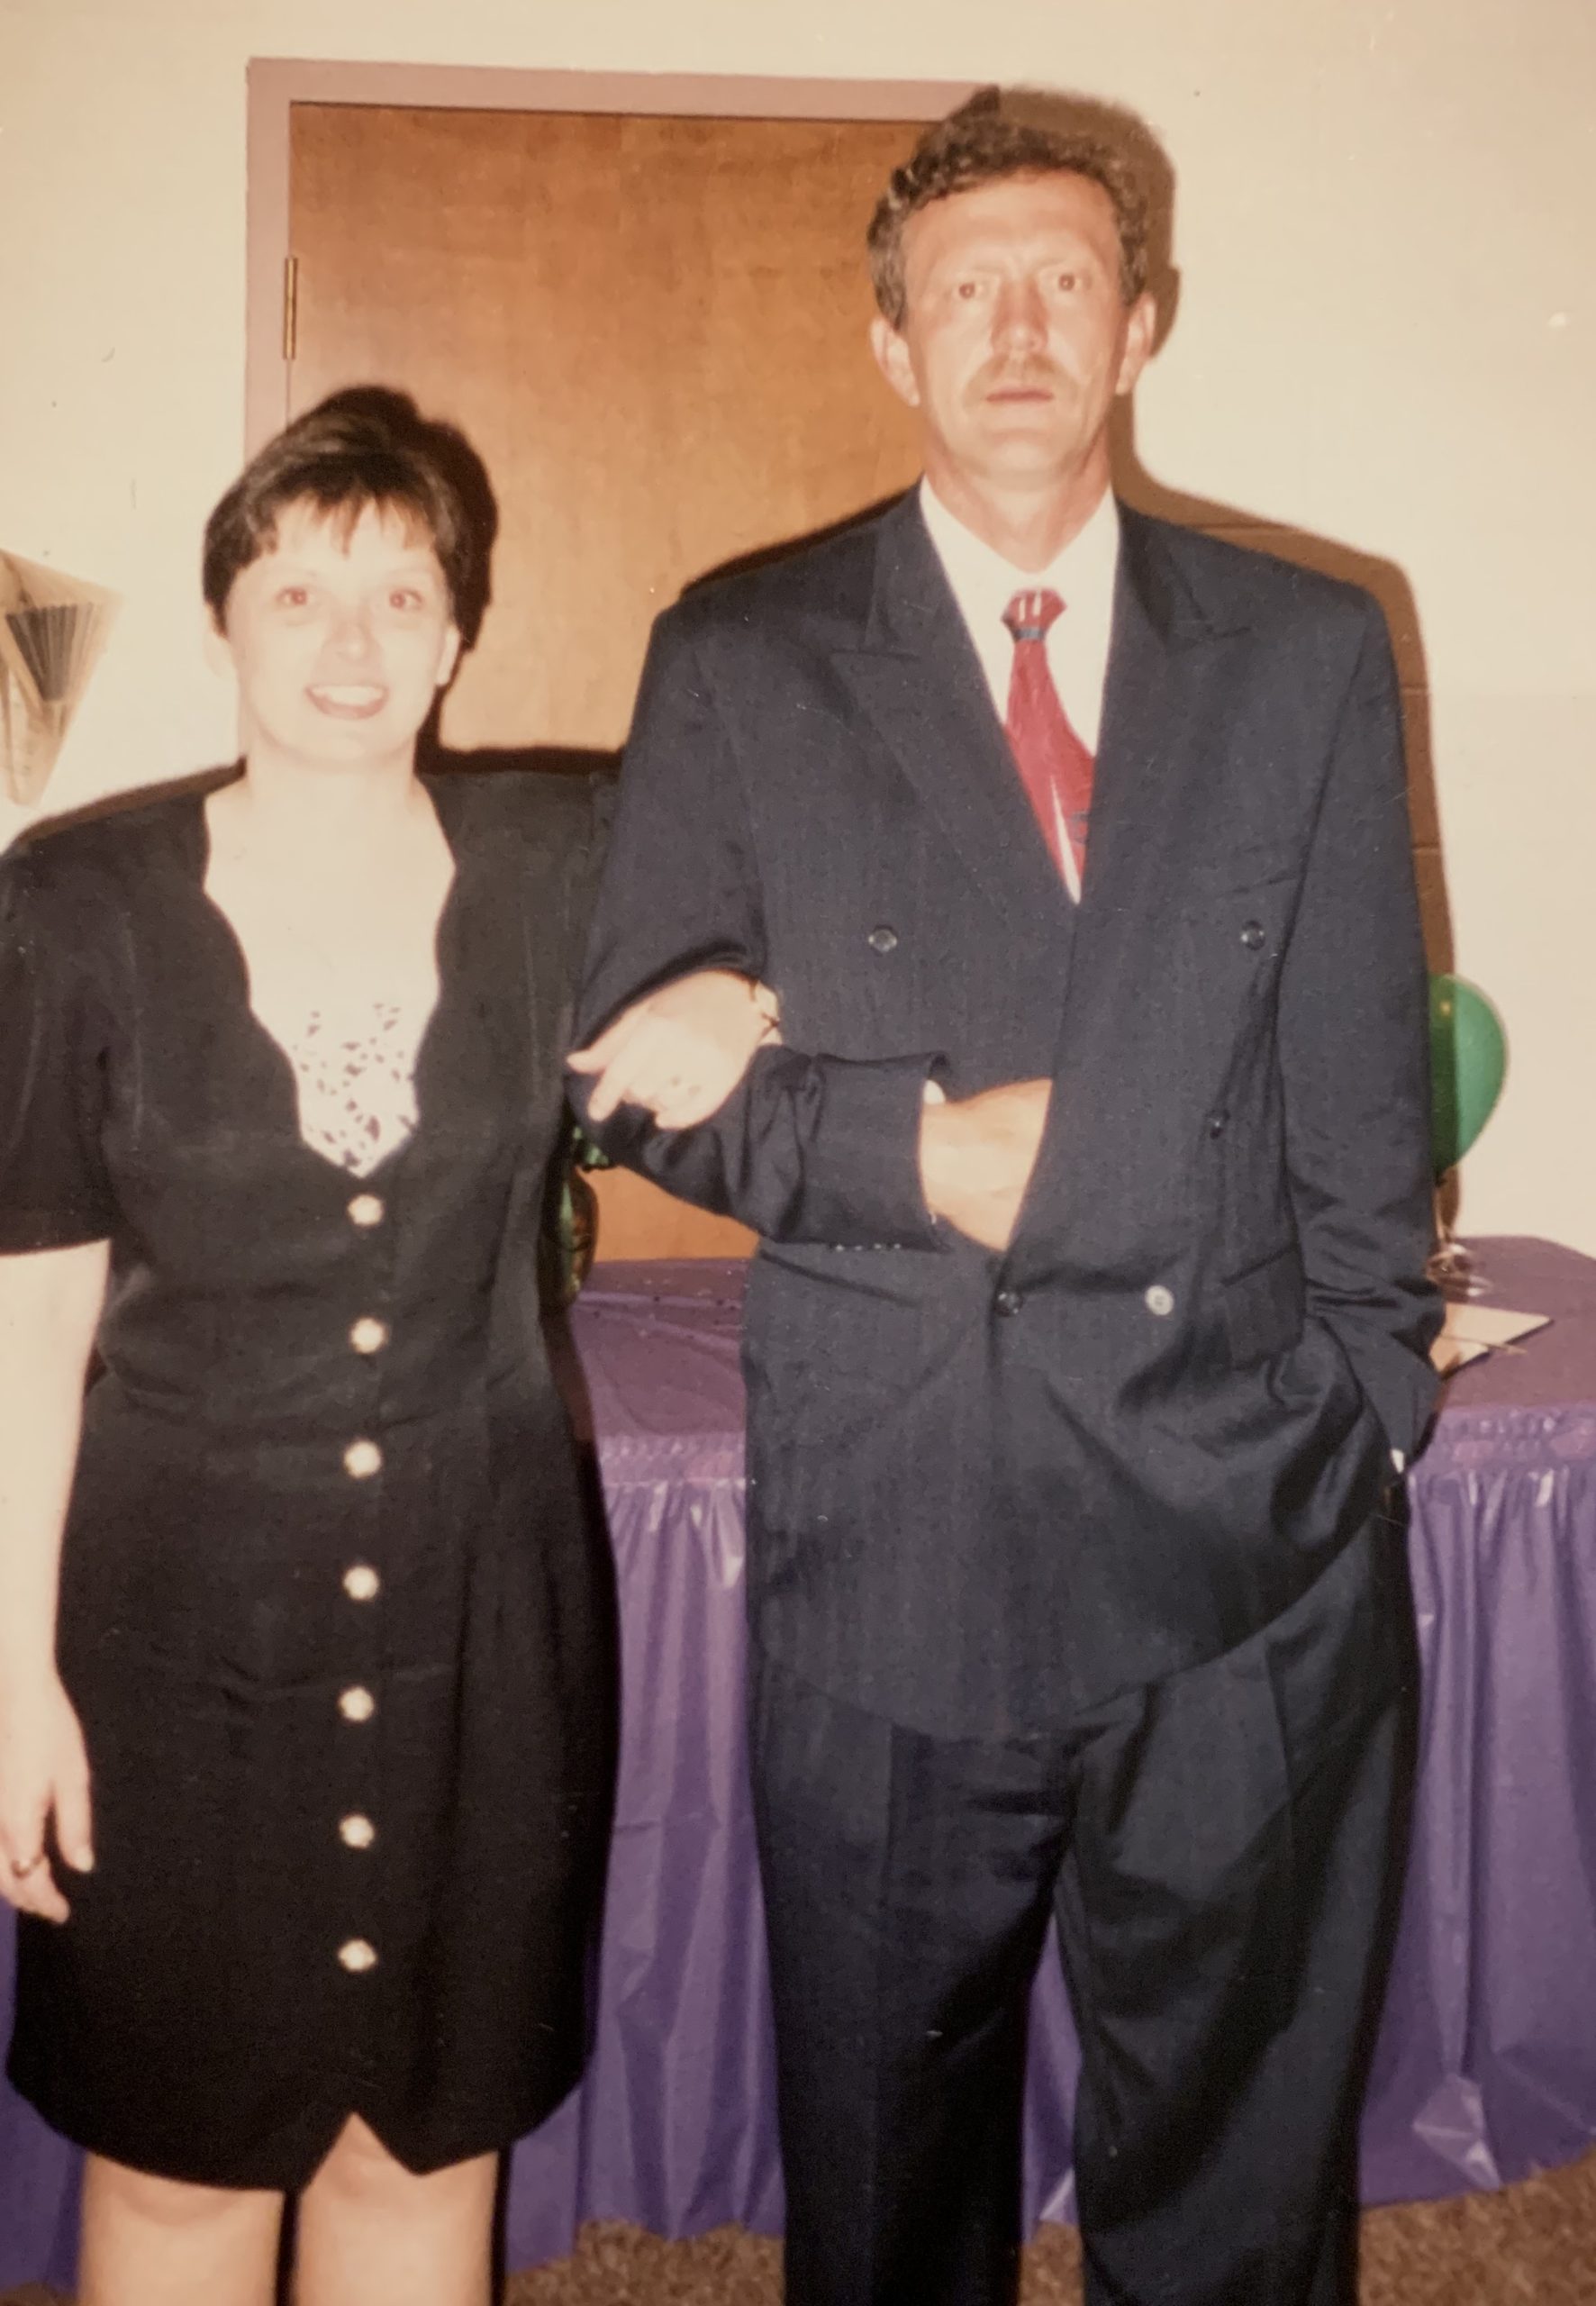 Peggy Munns Payne and Mark Payne, May 1994.